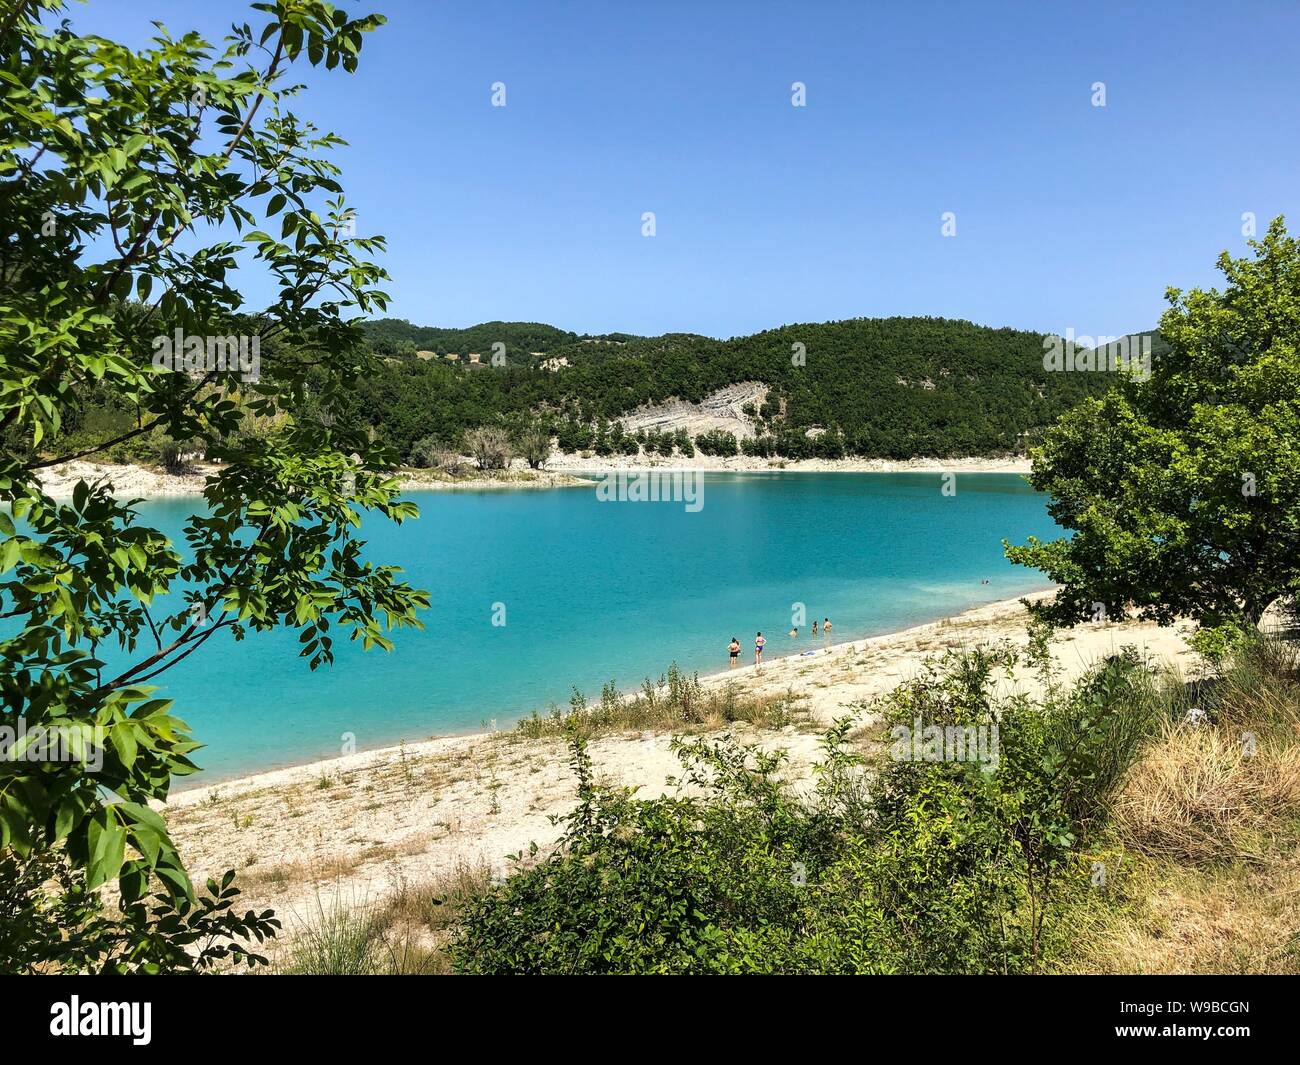 Il lago di Fiastra, Regione Marche, Italia. Il lago di Fiastra è un lago  artificiale il cui lavoro è iniziato nel 1955 con lo scopo di fornire energia  elettrica nella Valle del